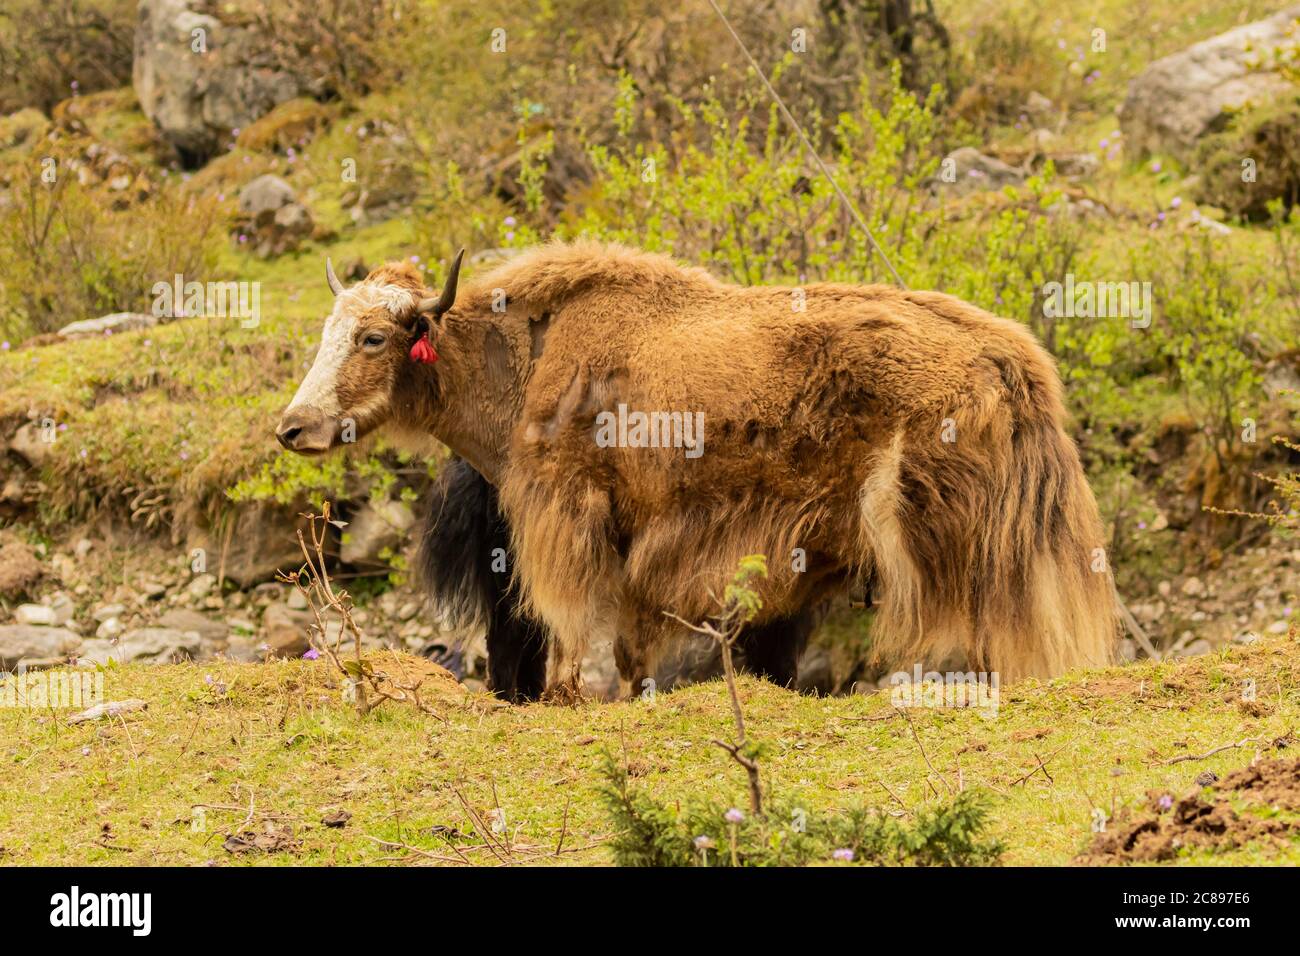 Immagine di lunghi acari bruni e neri dai capelli lunghi che si trovano nelle zone e nelle regioni più alte dell'Himalaya e degli altipiani tibetani. Foto Stock